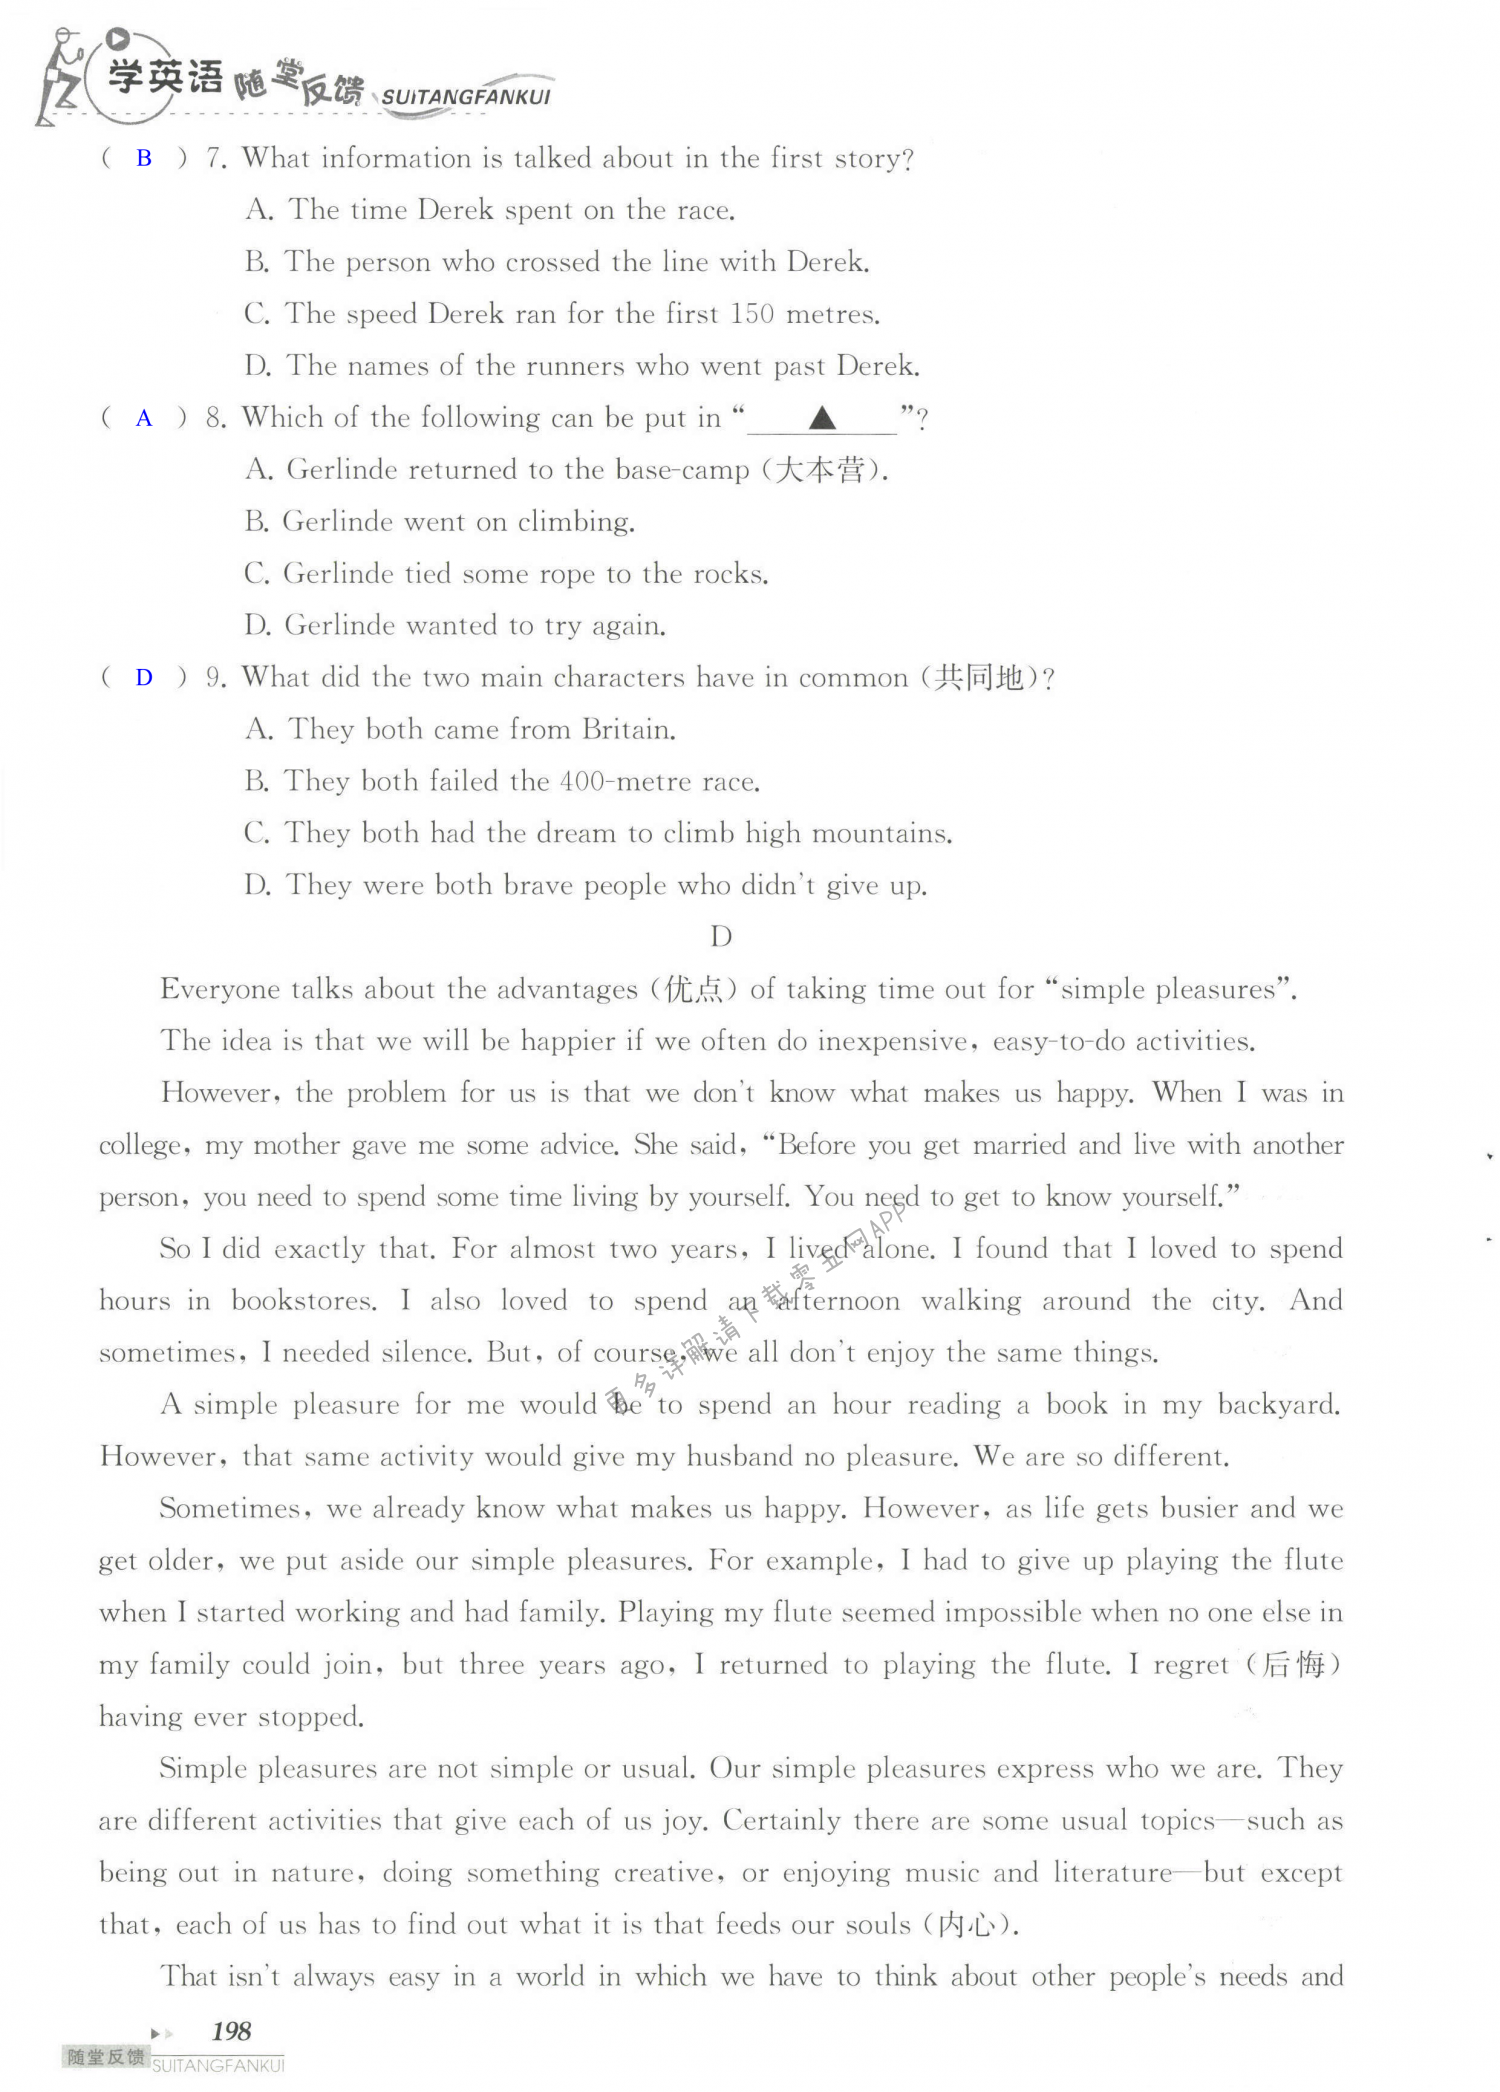 单元综合测试卷 Test for Unit 6 of 8B - 第198页